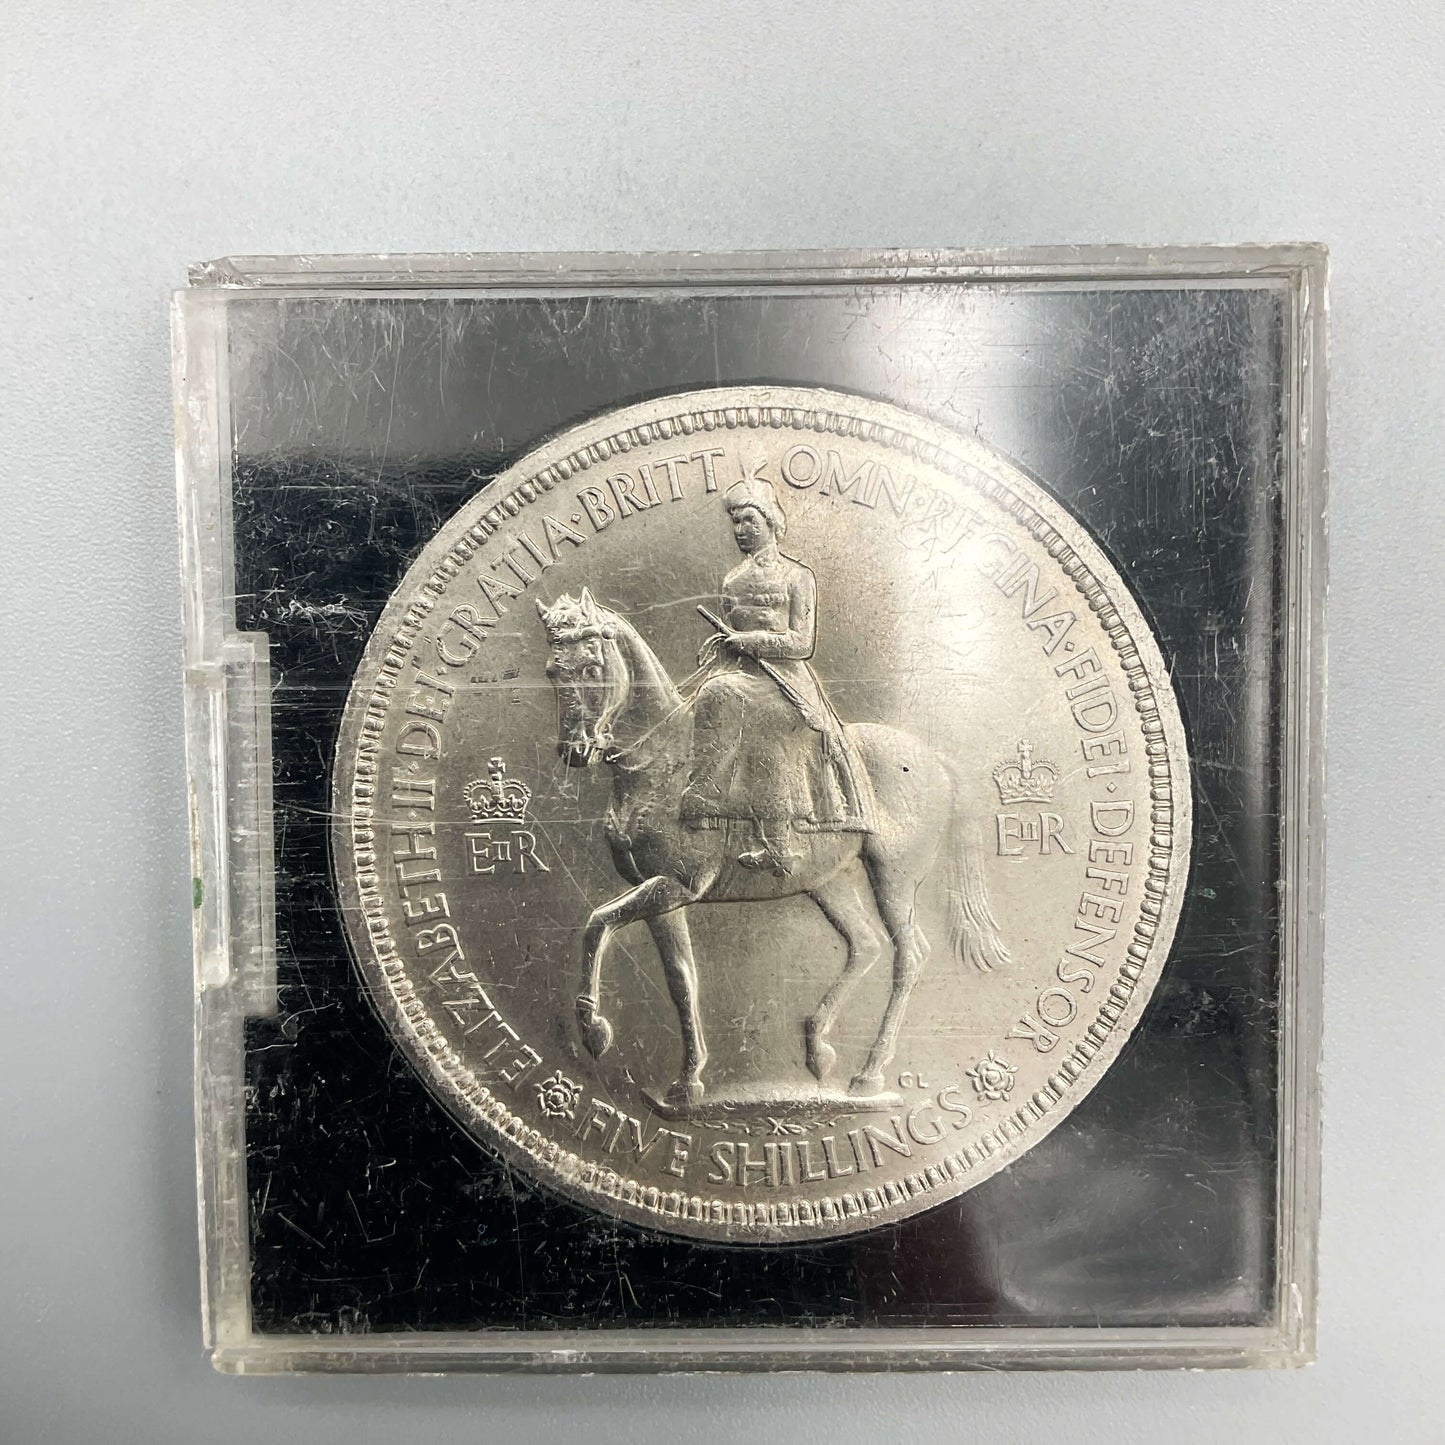 1953 Queen Elizabeth II Coronation Coin